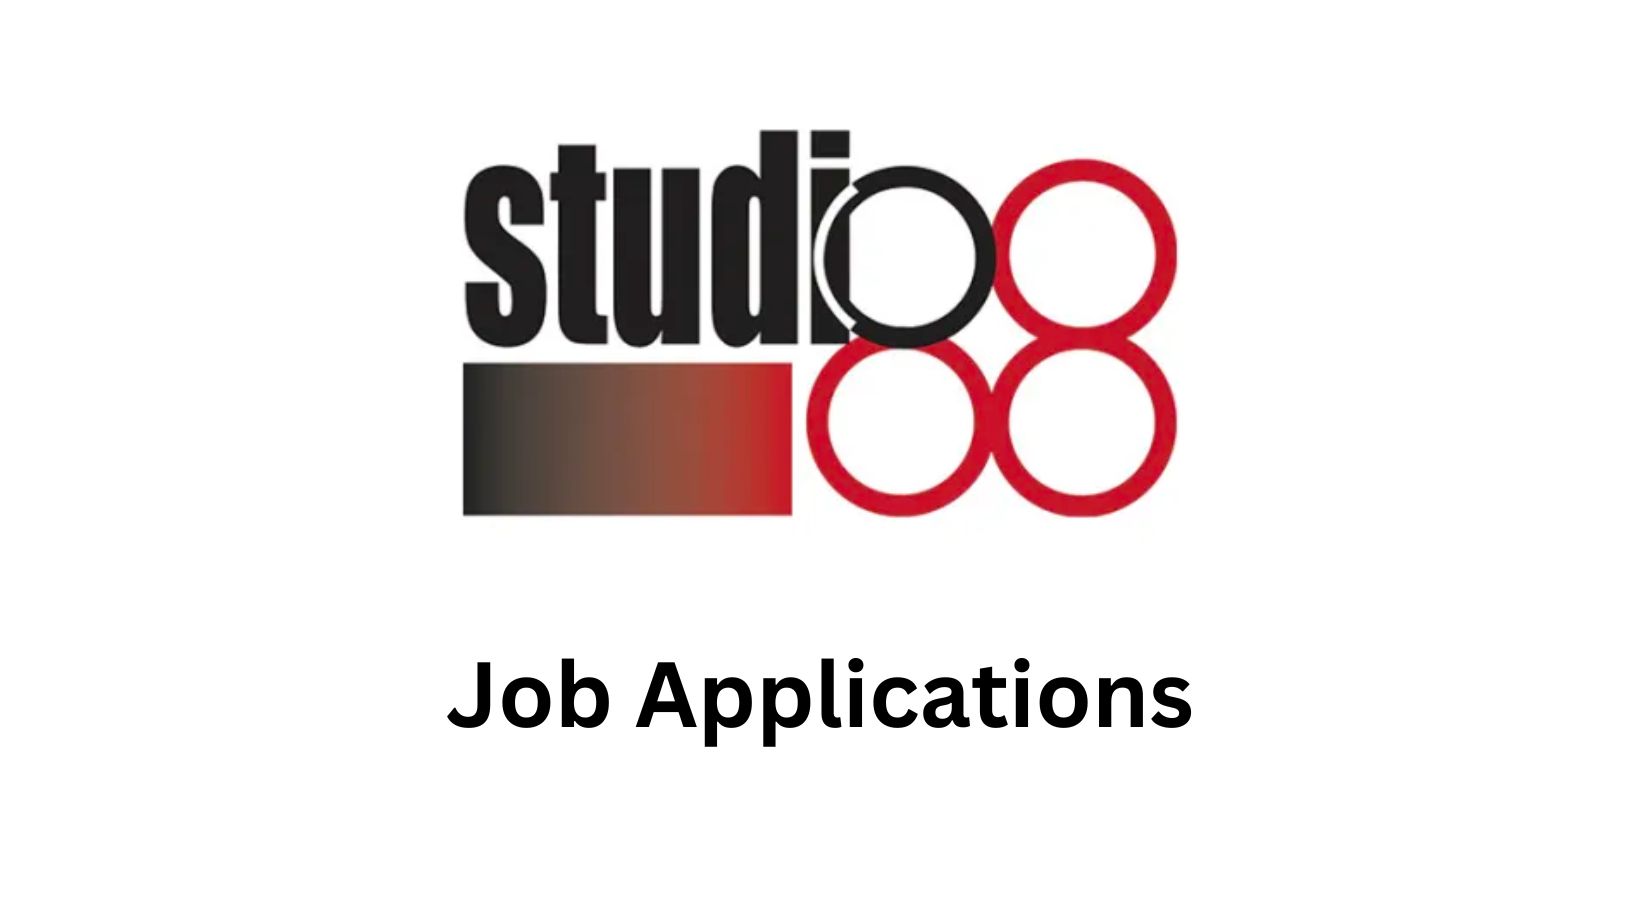 ob-Applications-studio-88